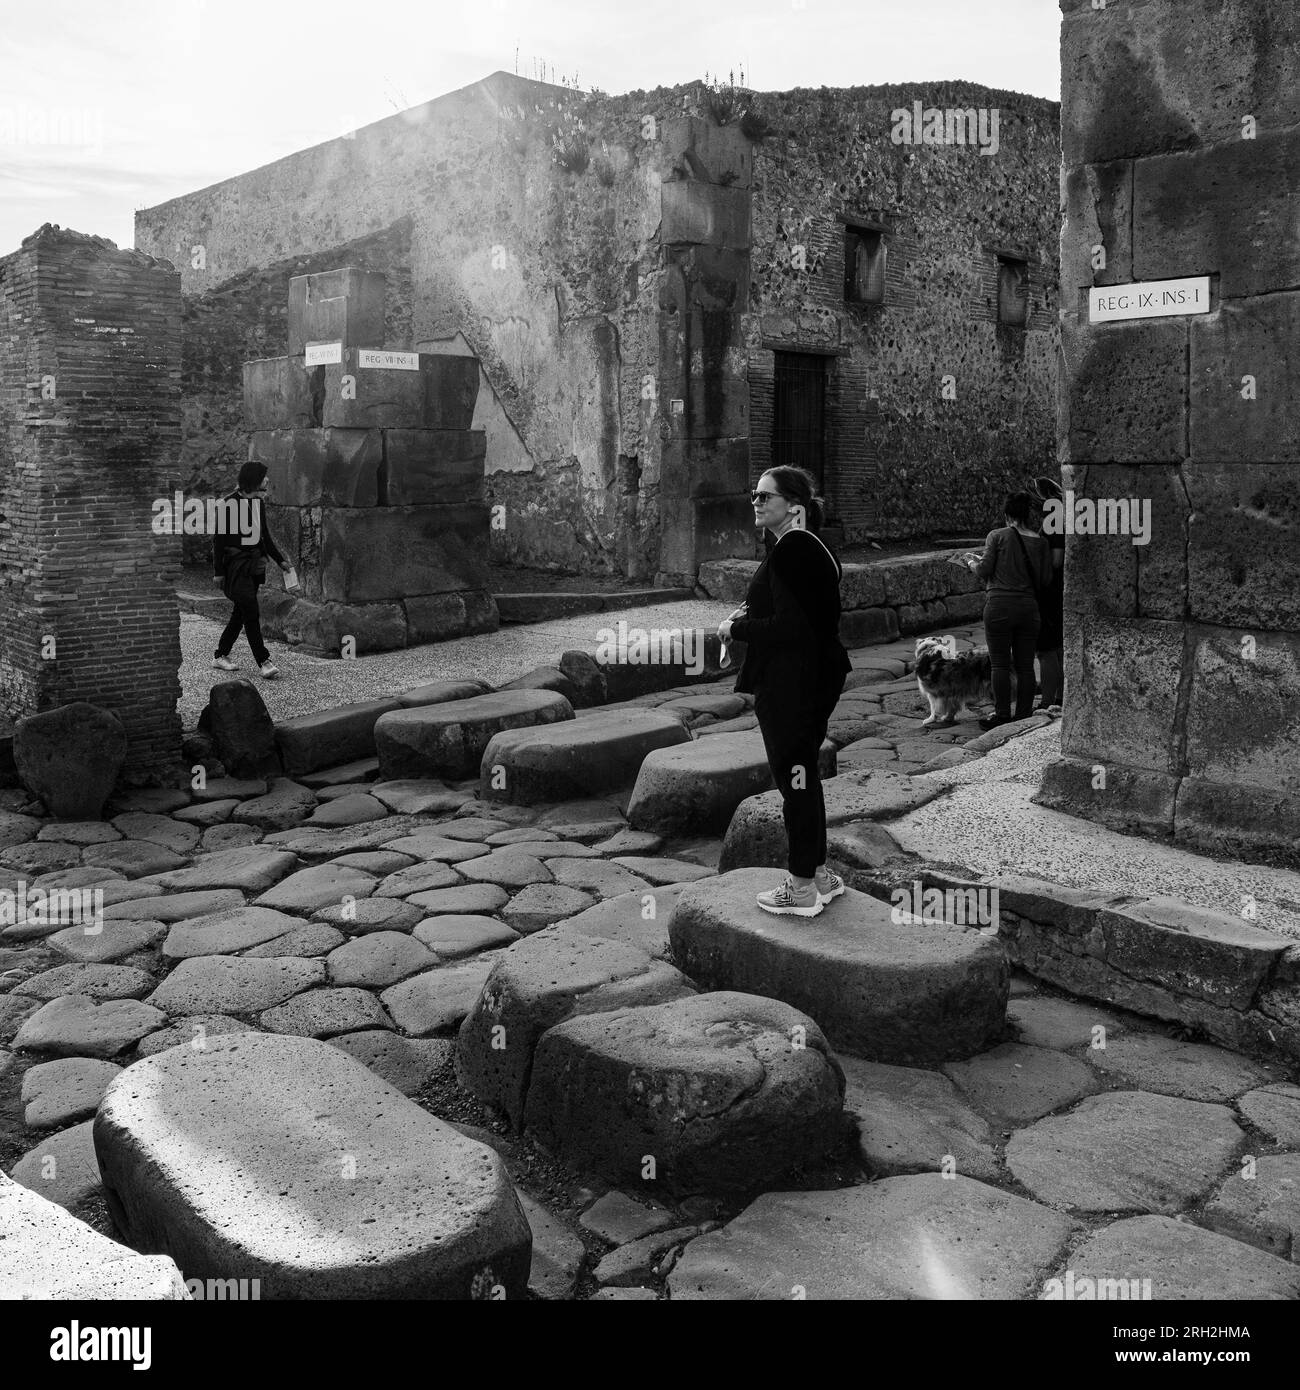 Sito archeologico di Pompei, Campania, Italia. Di fronte all'hotel. Pompei, Ercolano e Torre Annunziata sono collettivamente denominati A. Foto Stock